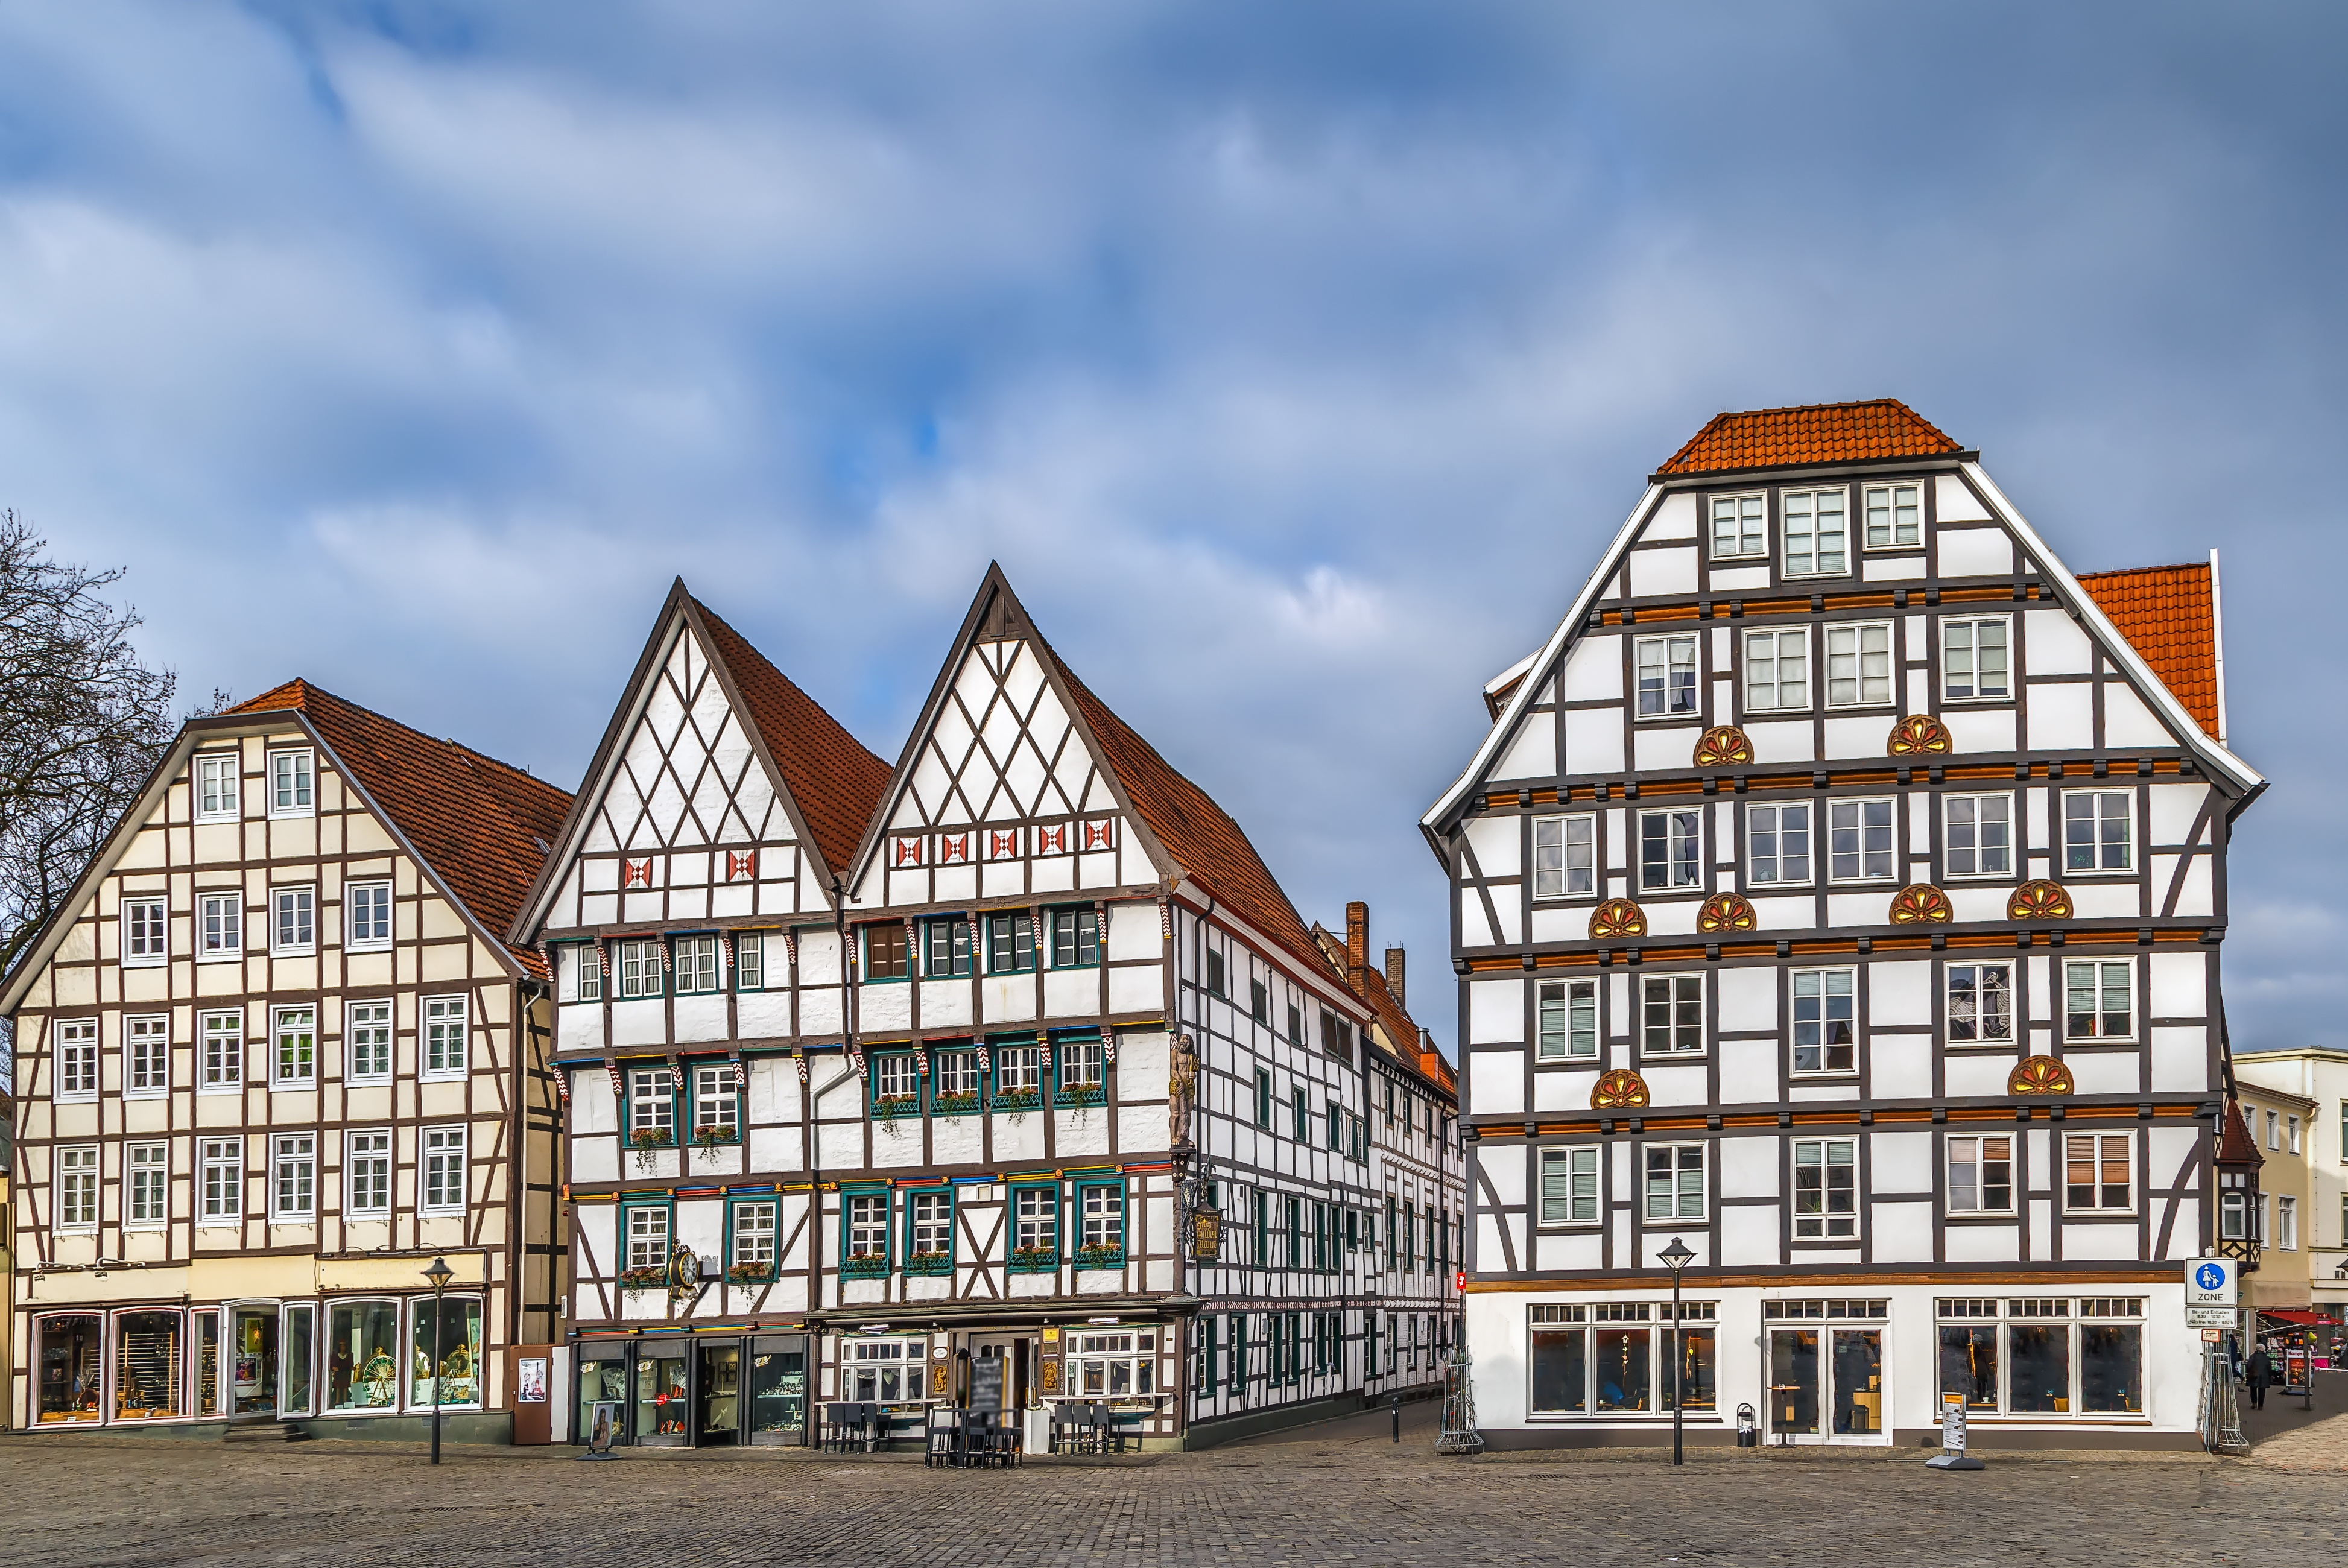 Soester Marktplatz mit schönen Fachwerkhäusern